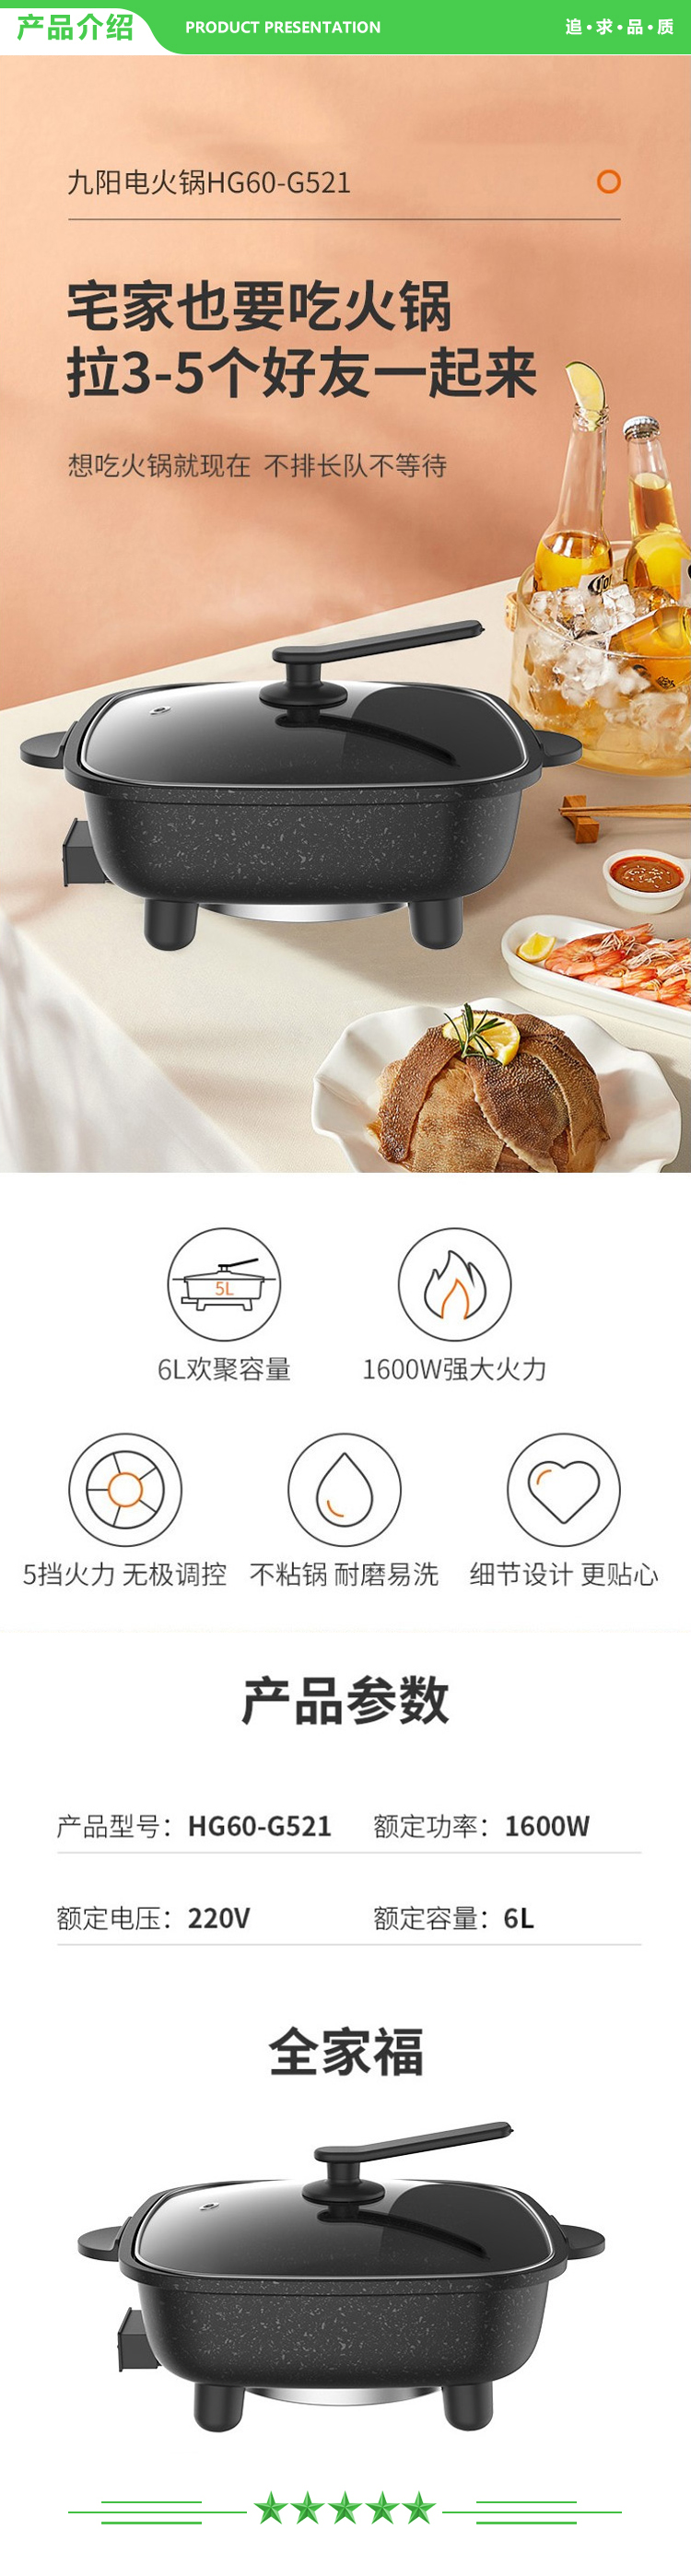 九阳 Joyoung HG60-G521 电火锅家用6L大容量电煮锅电热锅 (2).jpg